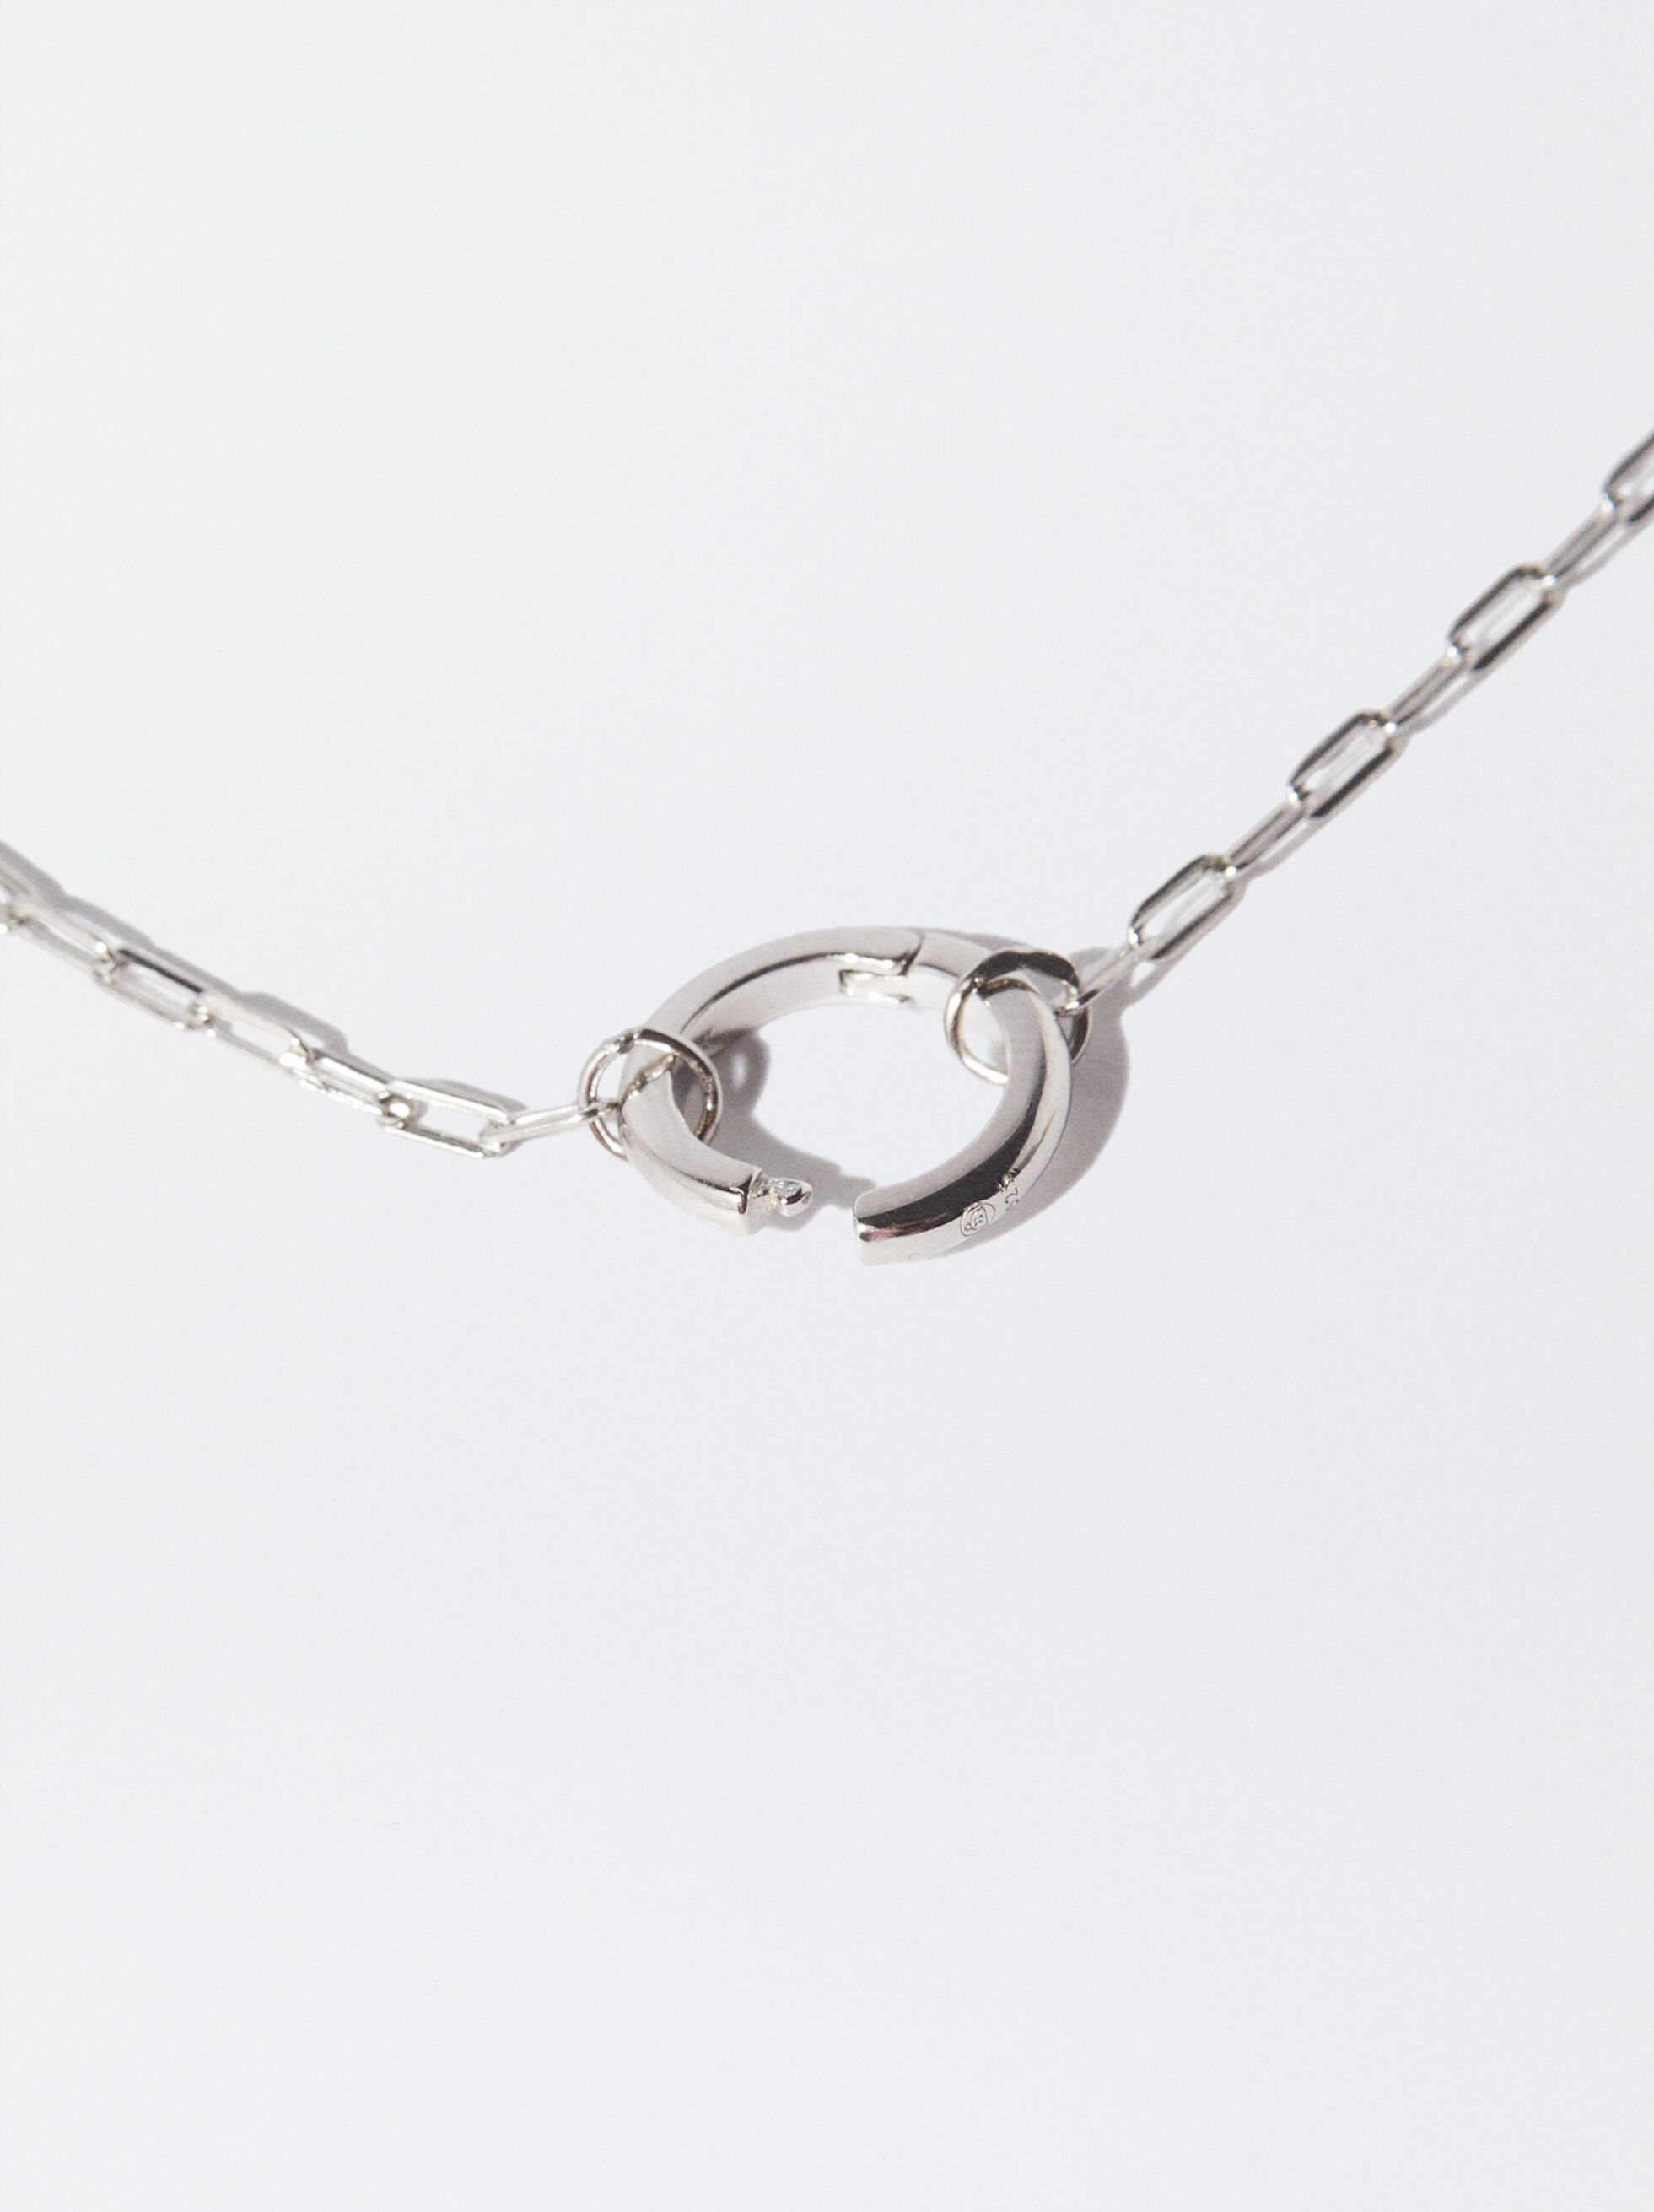 JENNIFER 18ct White Gold Plating Necklace With Name - Stylish Christmas  Custom | eBay